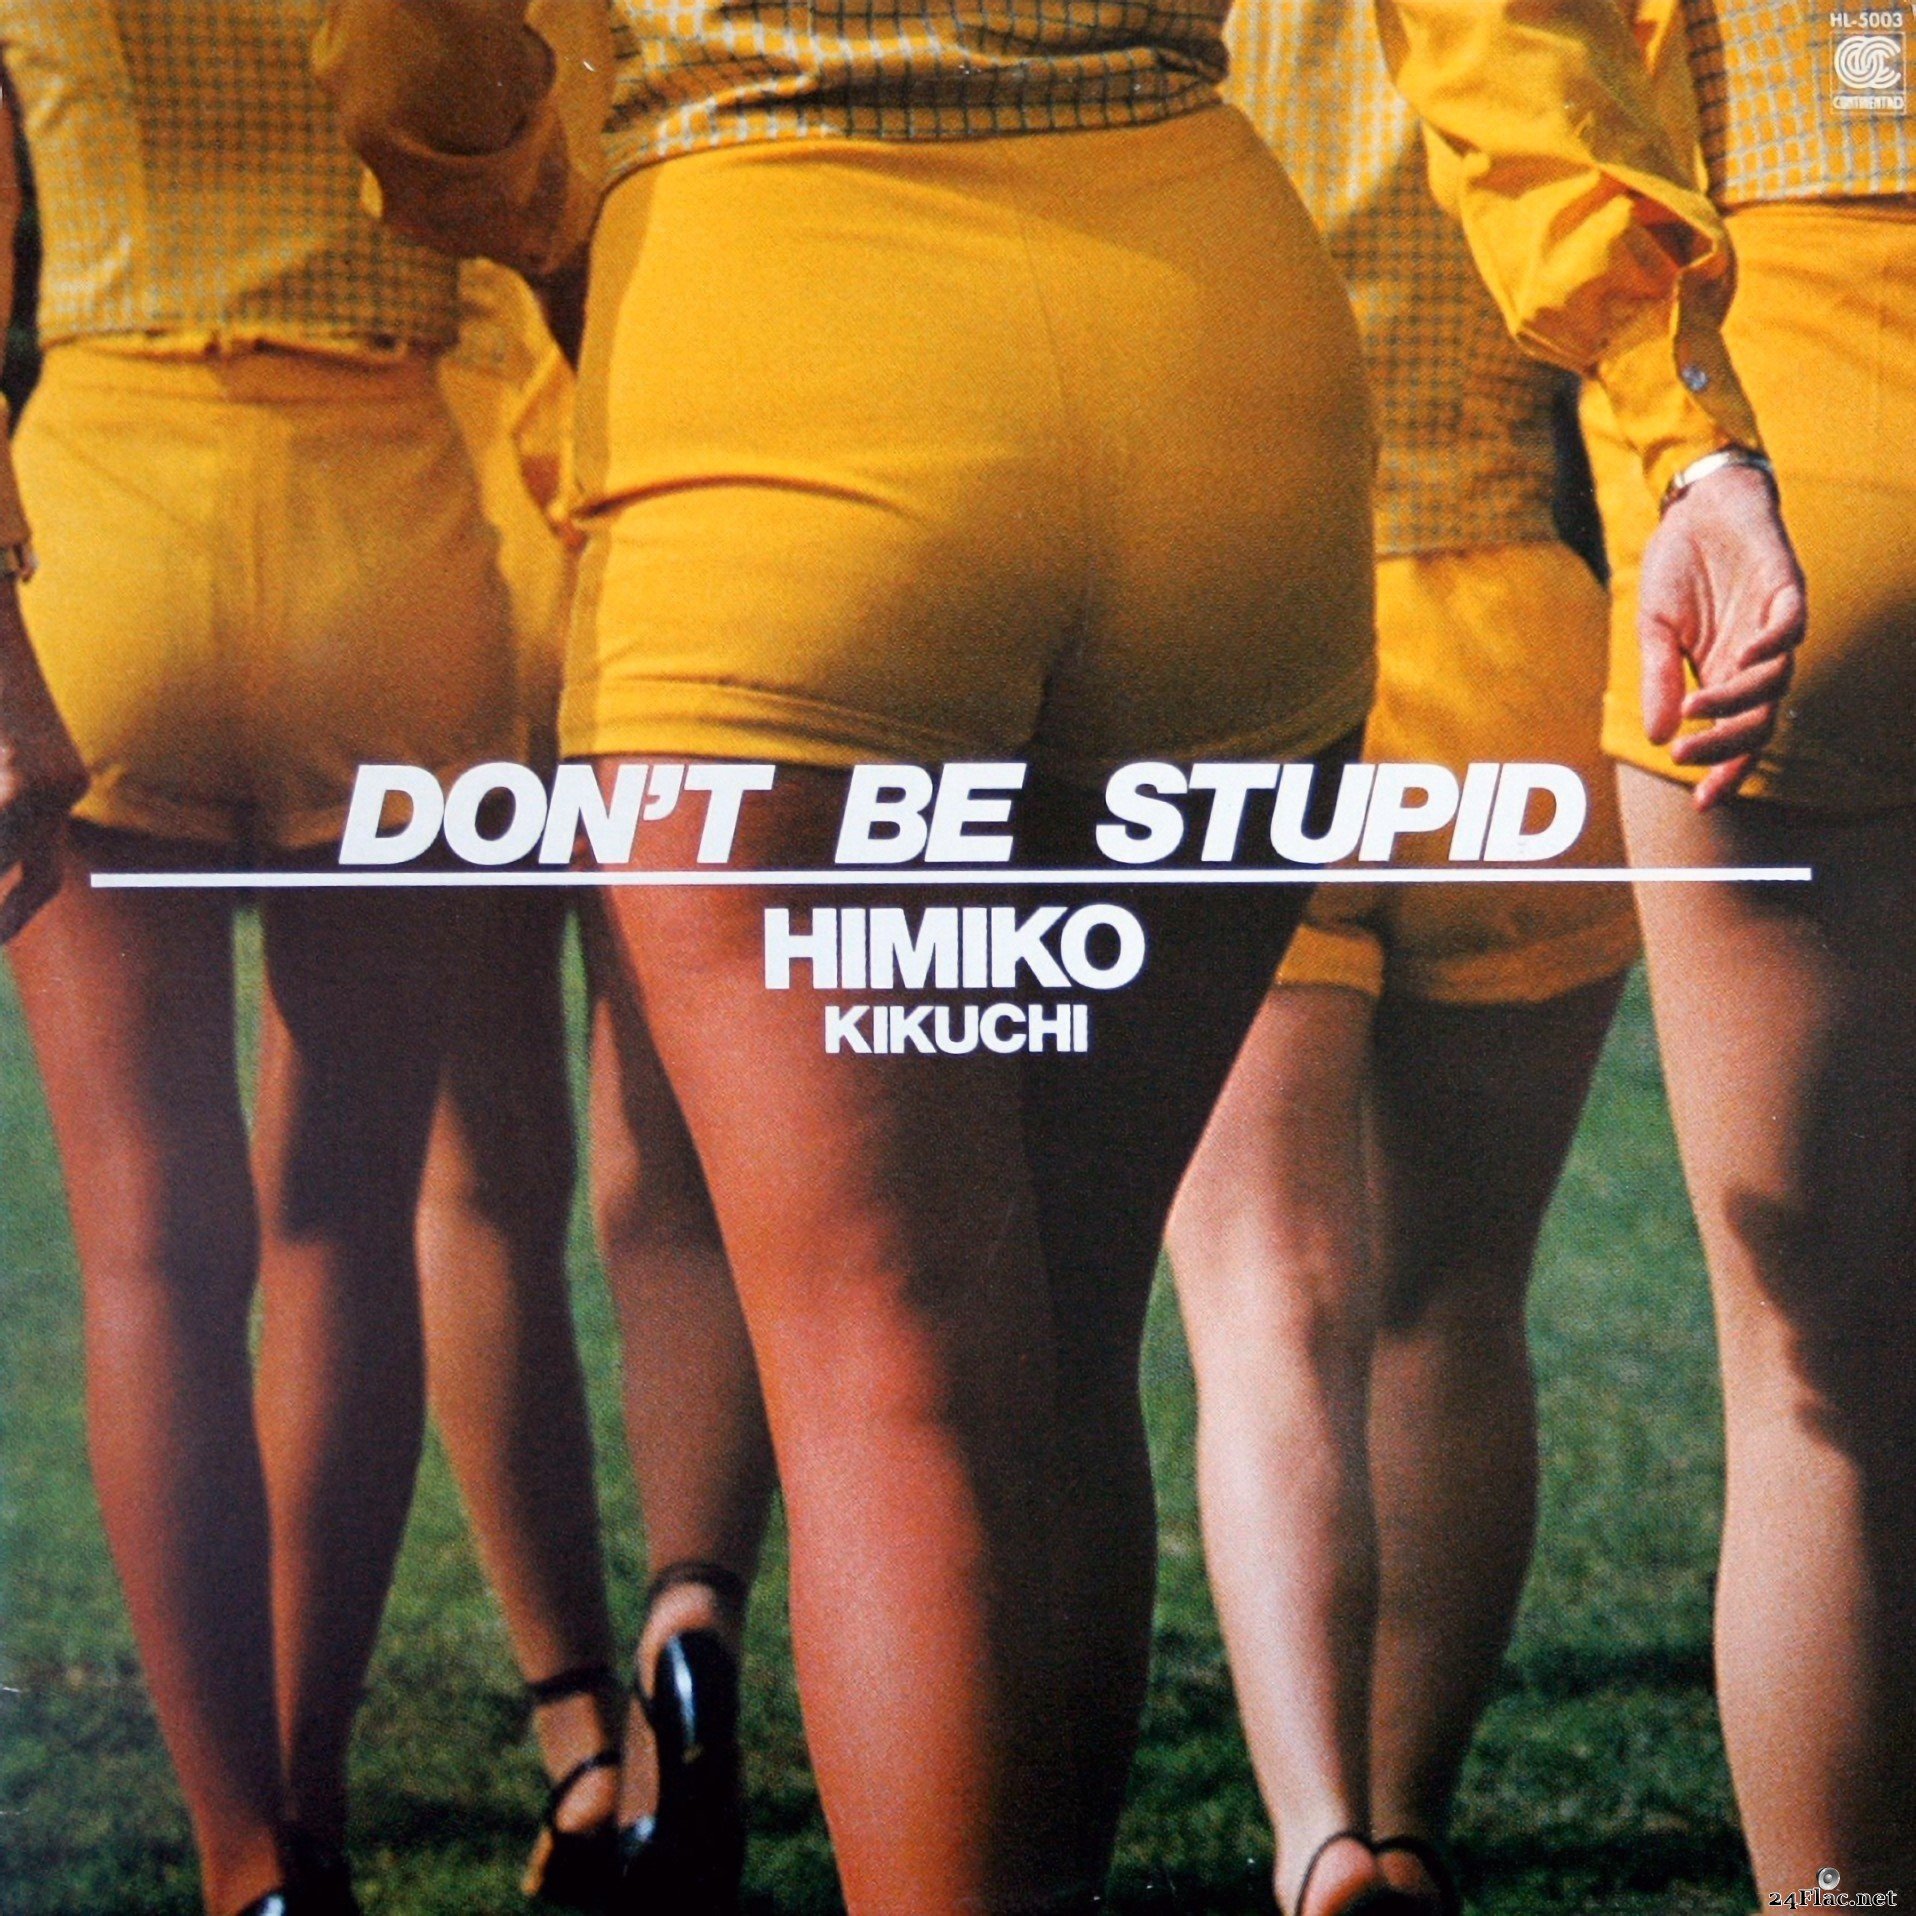 Himiko Kikuchi - Don't Be Stupid (1980) Vinyl